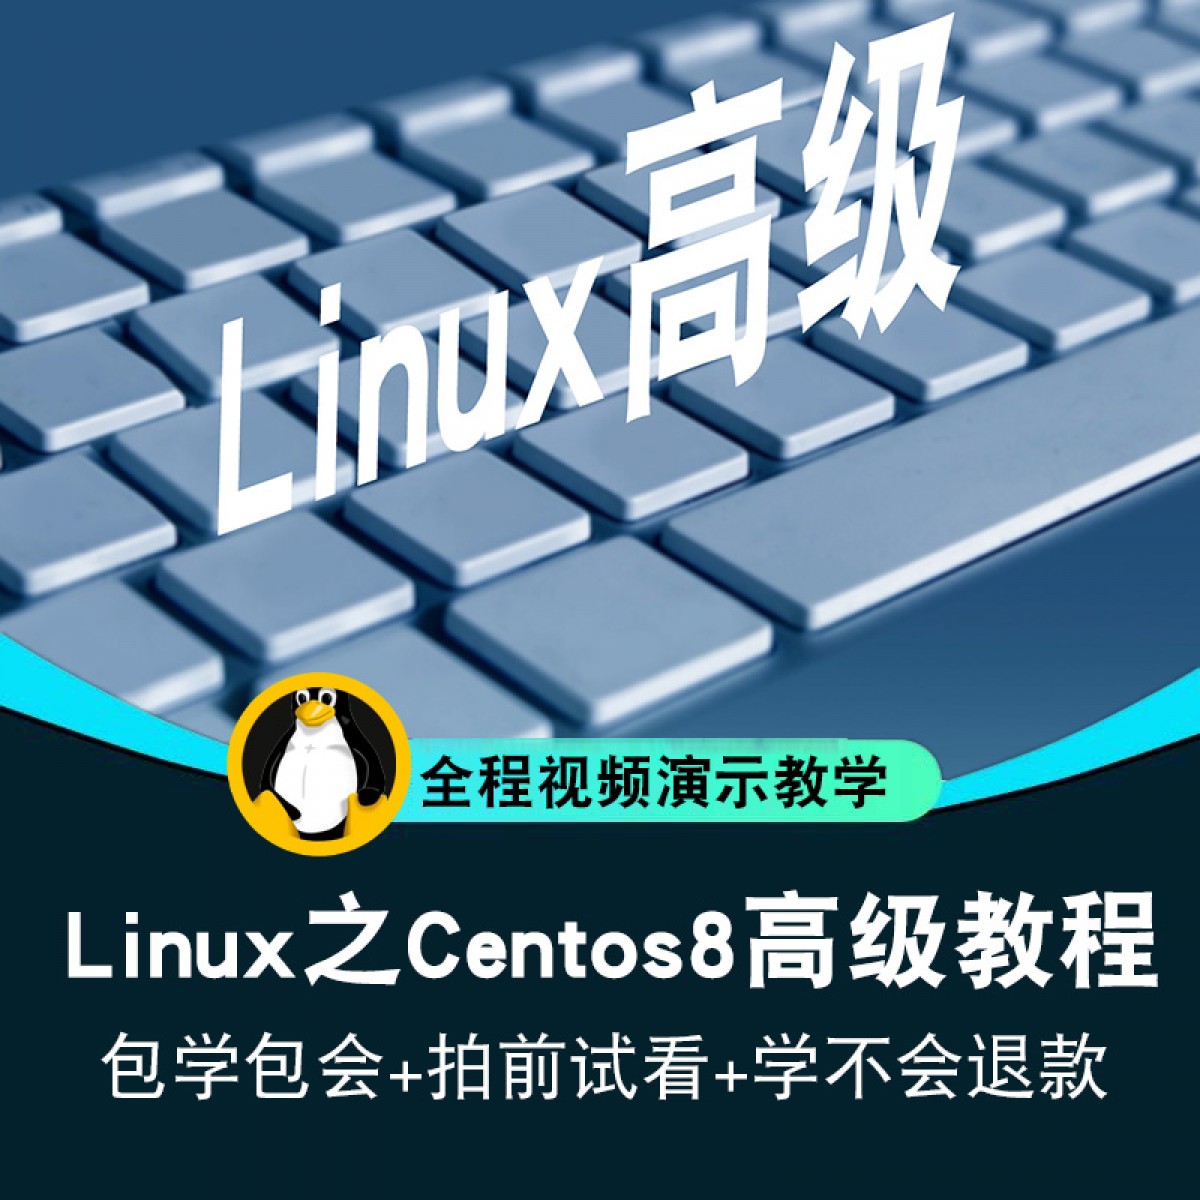 linux视频教程 centos8系统shell教学运维基础入门高阶 在线课程